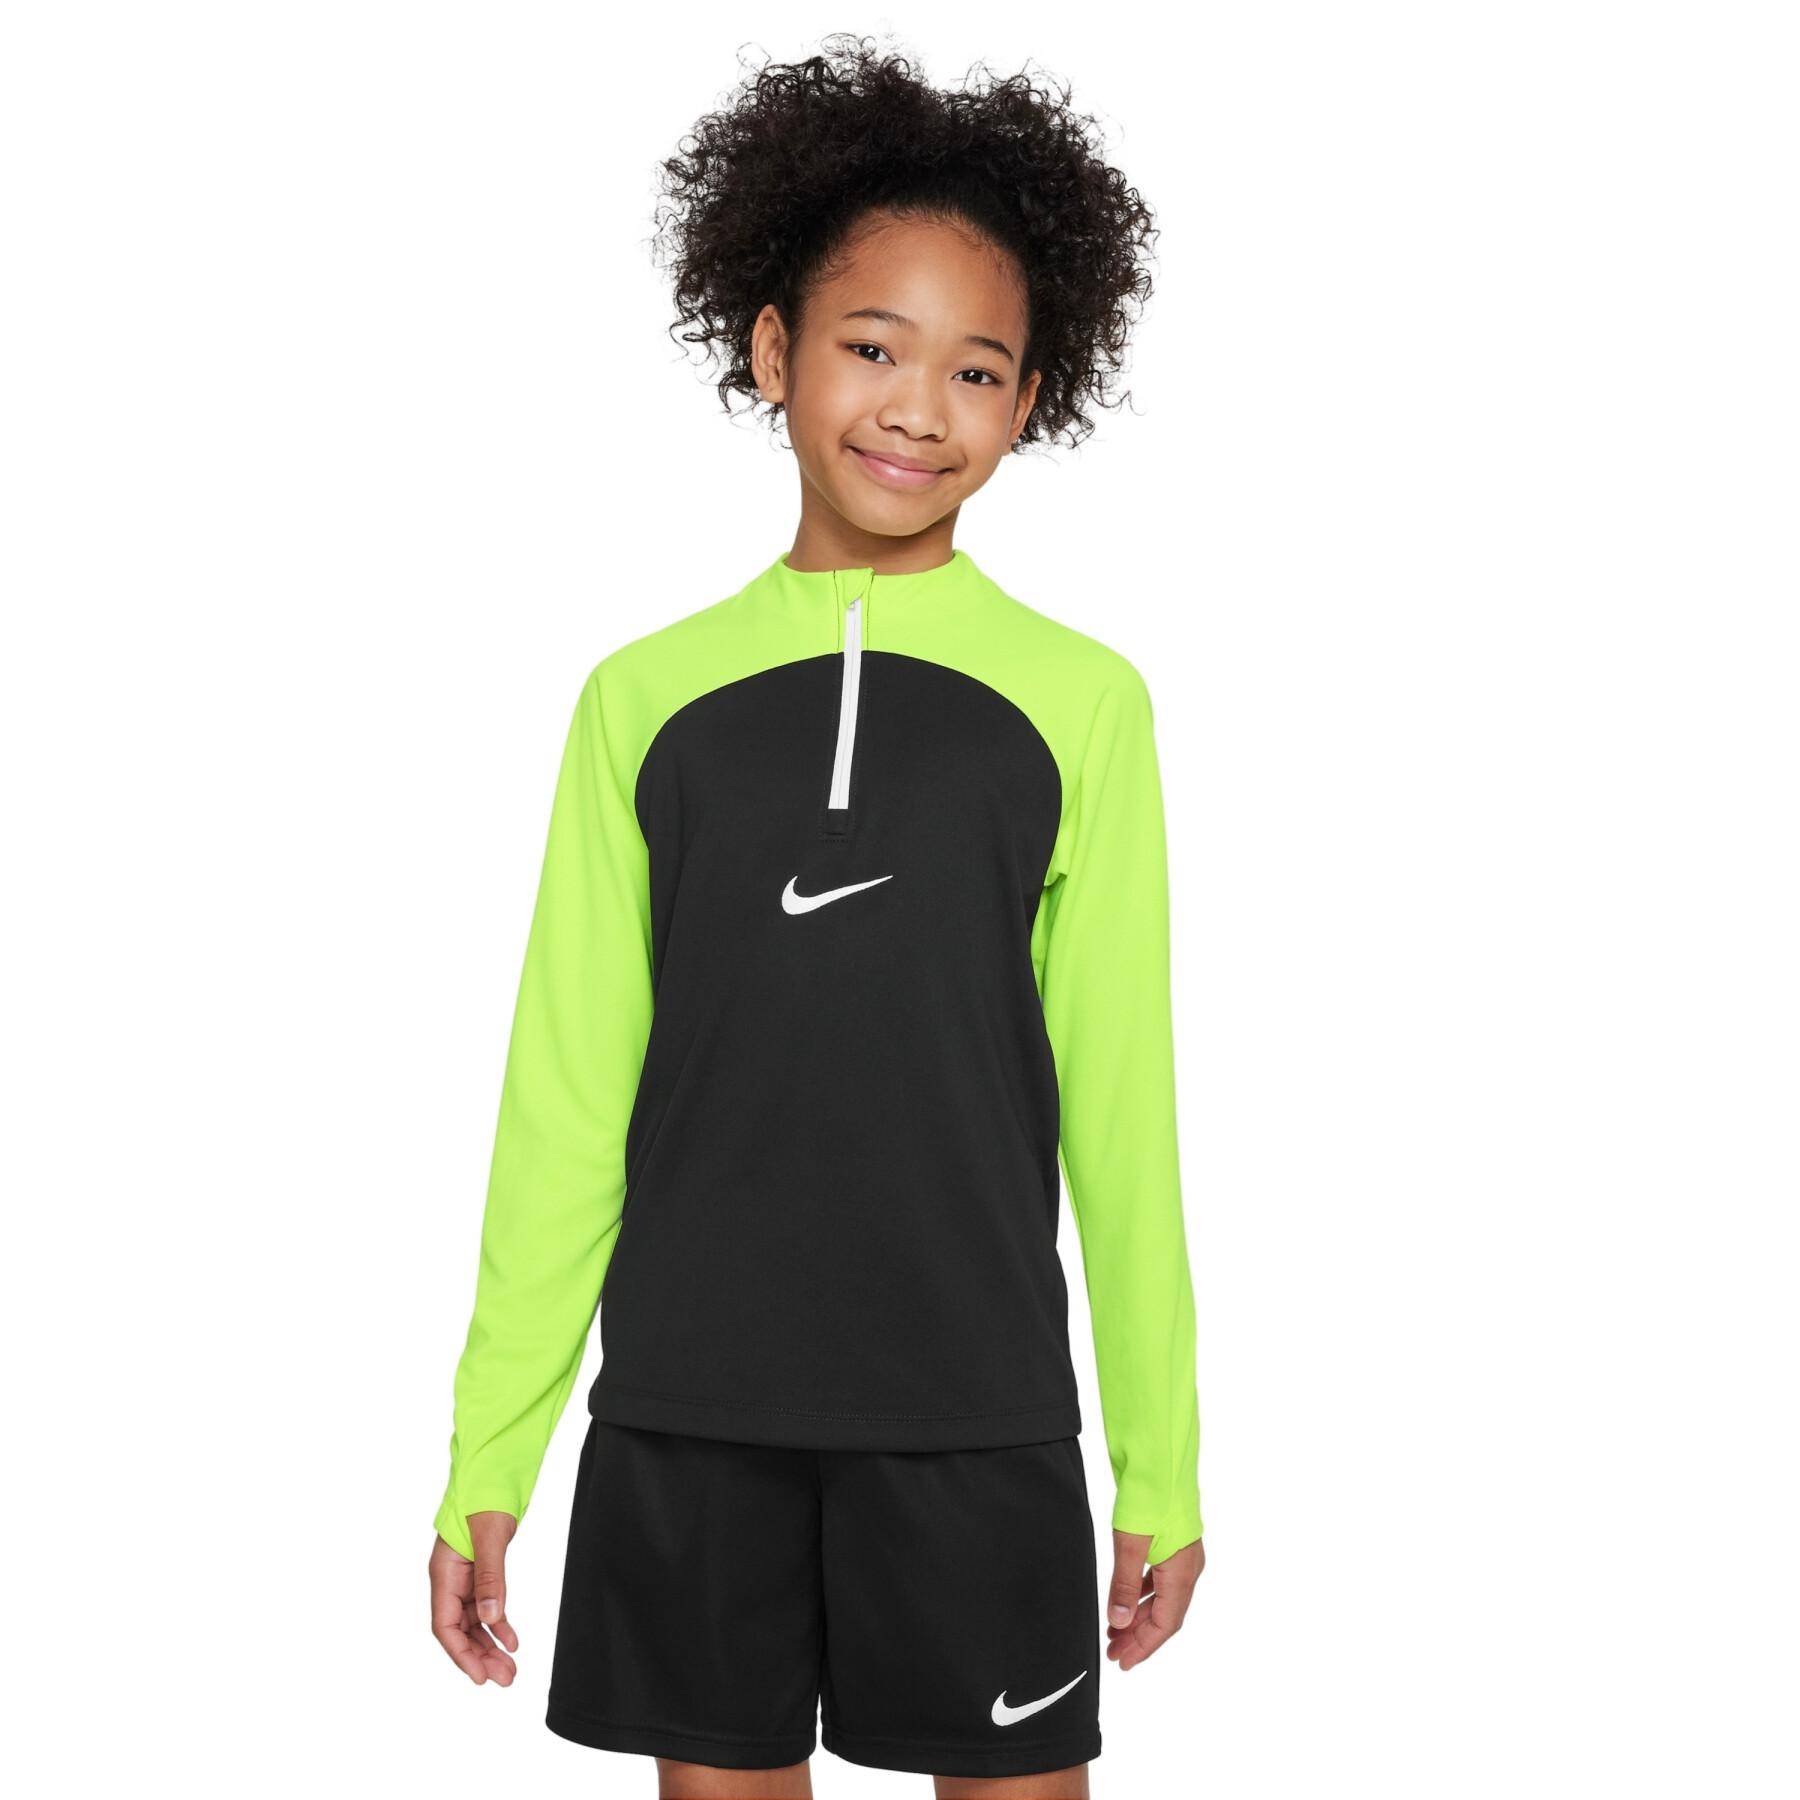 Maglia per bambini Nike Academy Pro